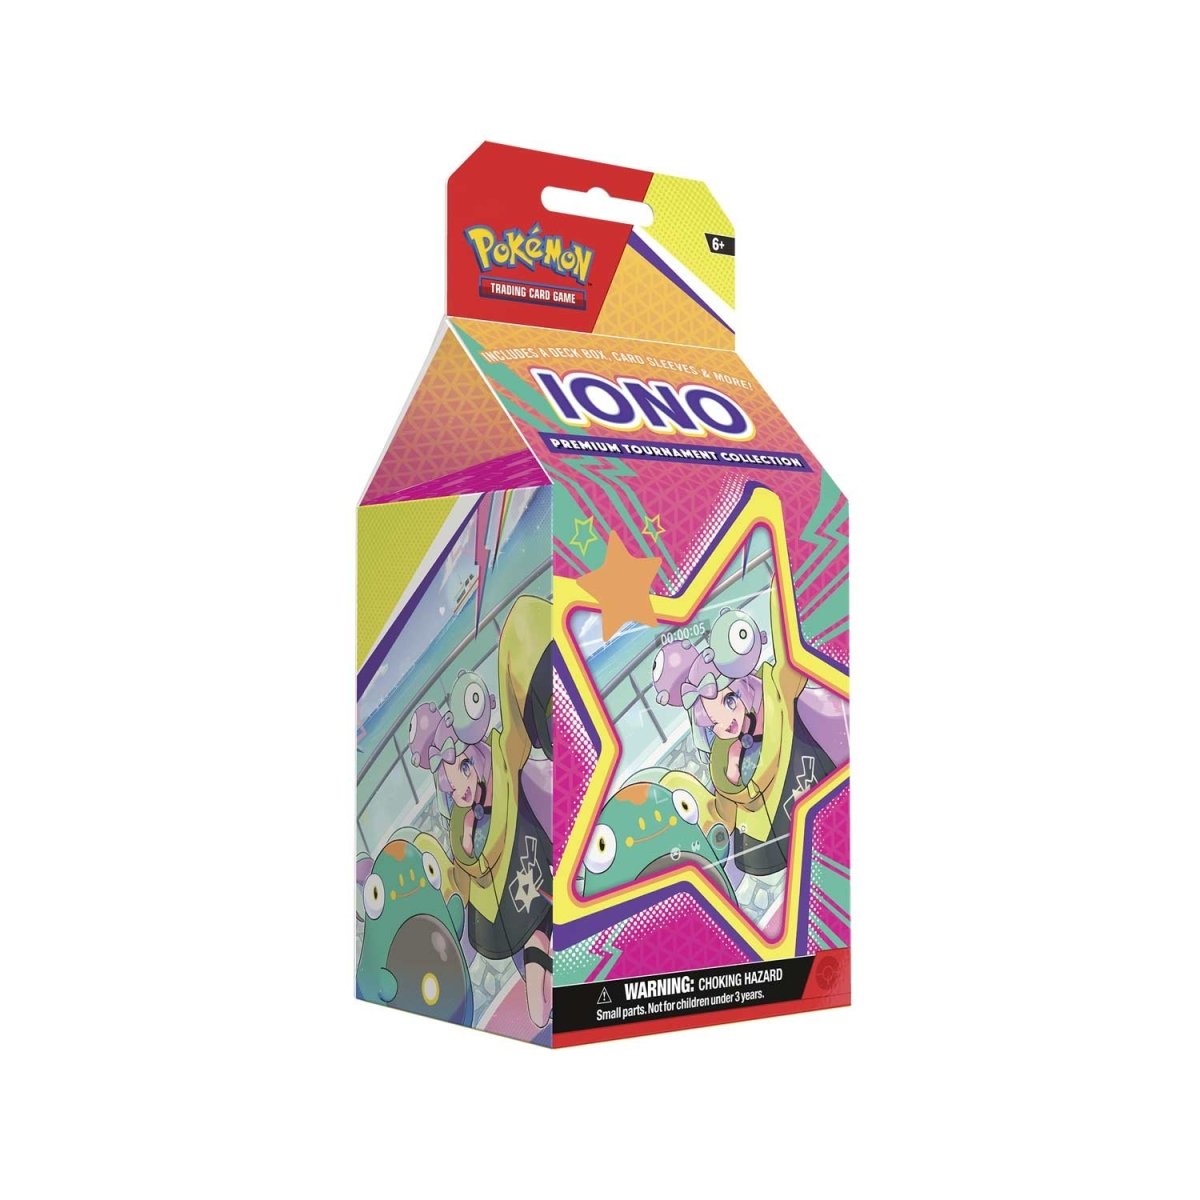 Pokemon Iono Premium Tournament Collection (Pre-Order) - Premier Trading Cards